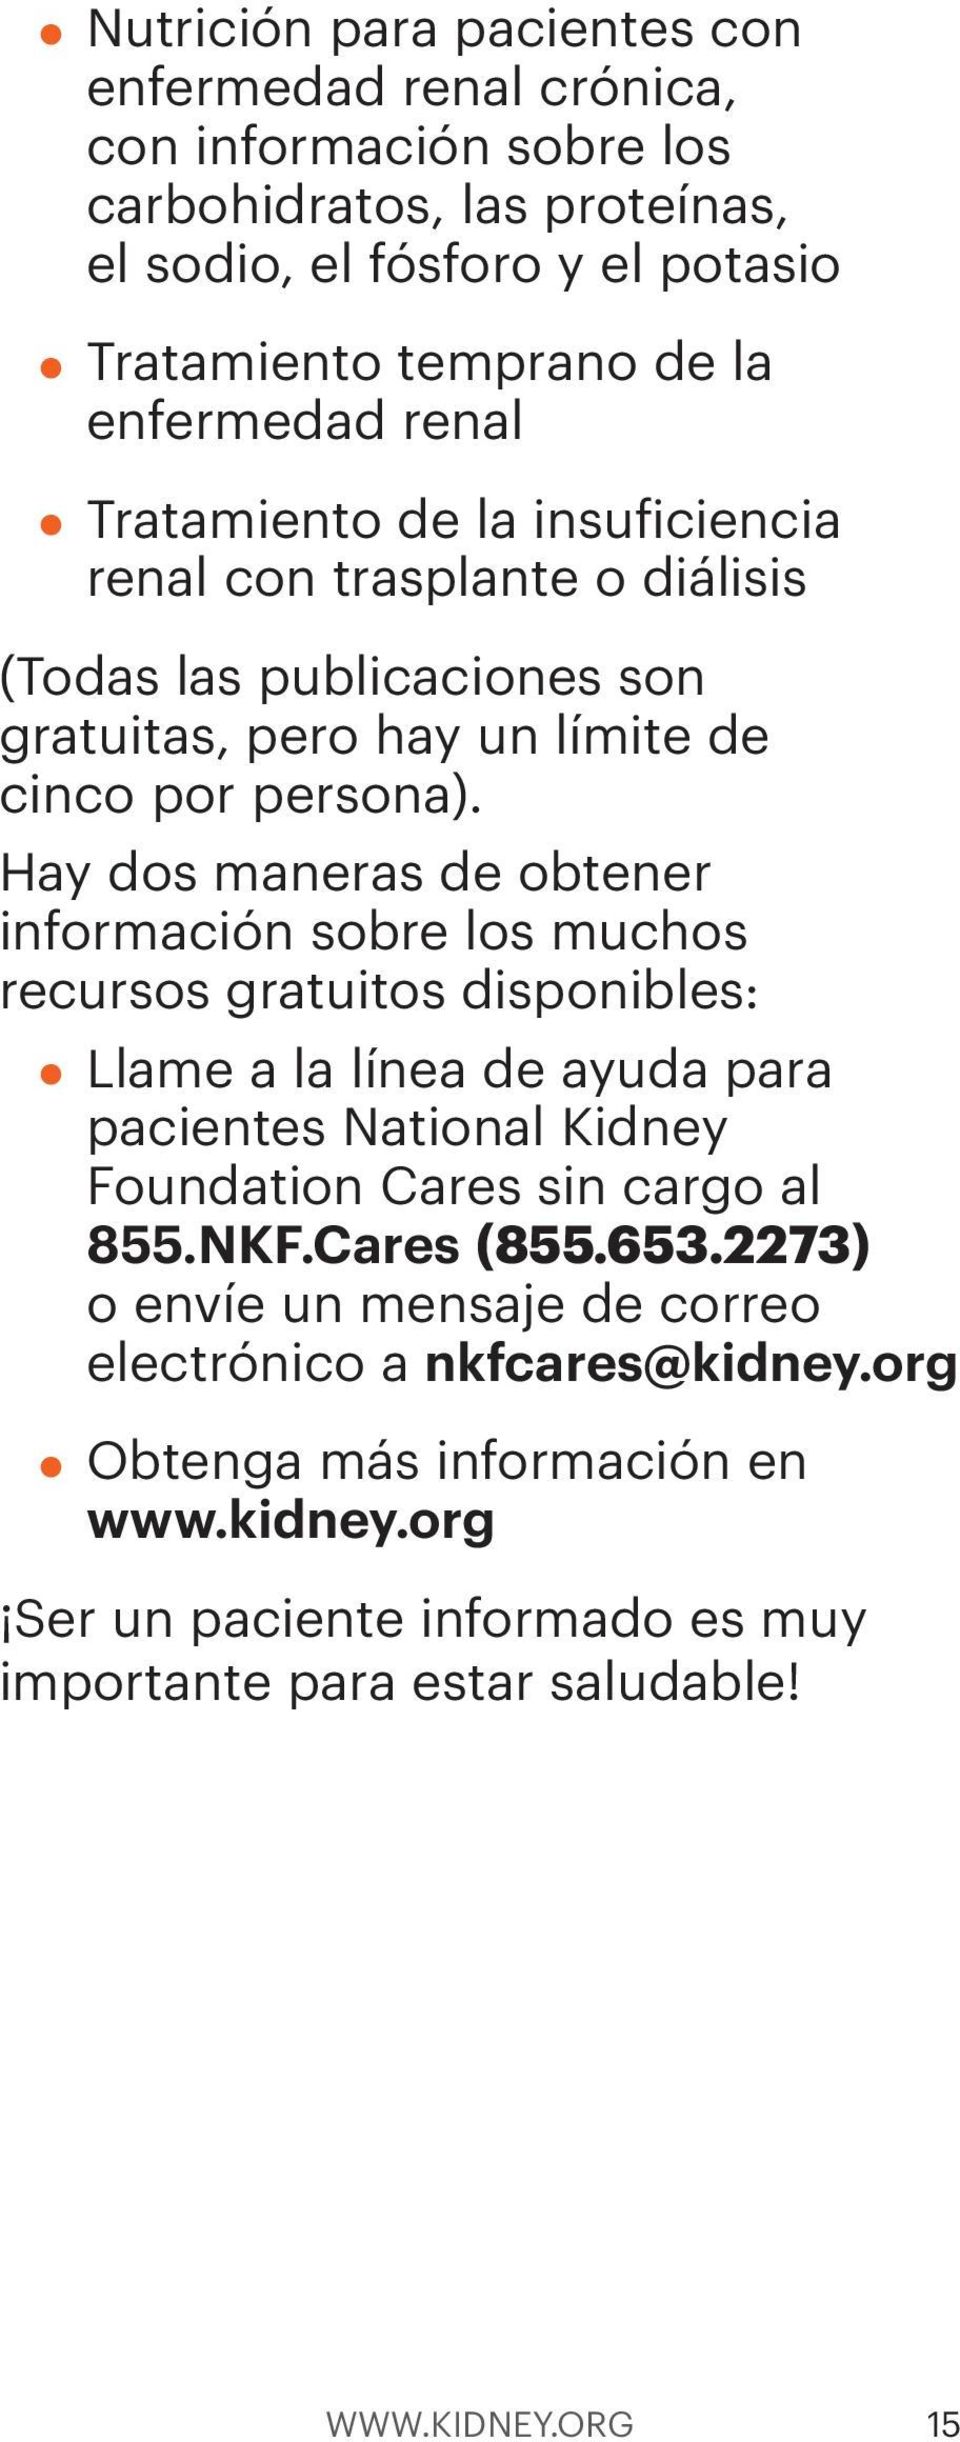 Hay dos maneras de obtener información sobre los muchos recursos gratuitos disponibles: Llame a la línea de ayuda para pacientes National Kidney Foundation Cares sin cargo al 855.